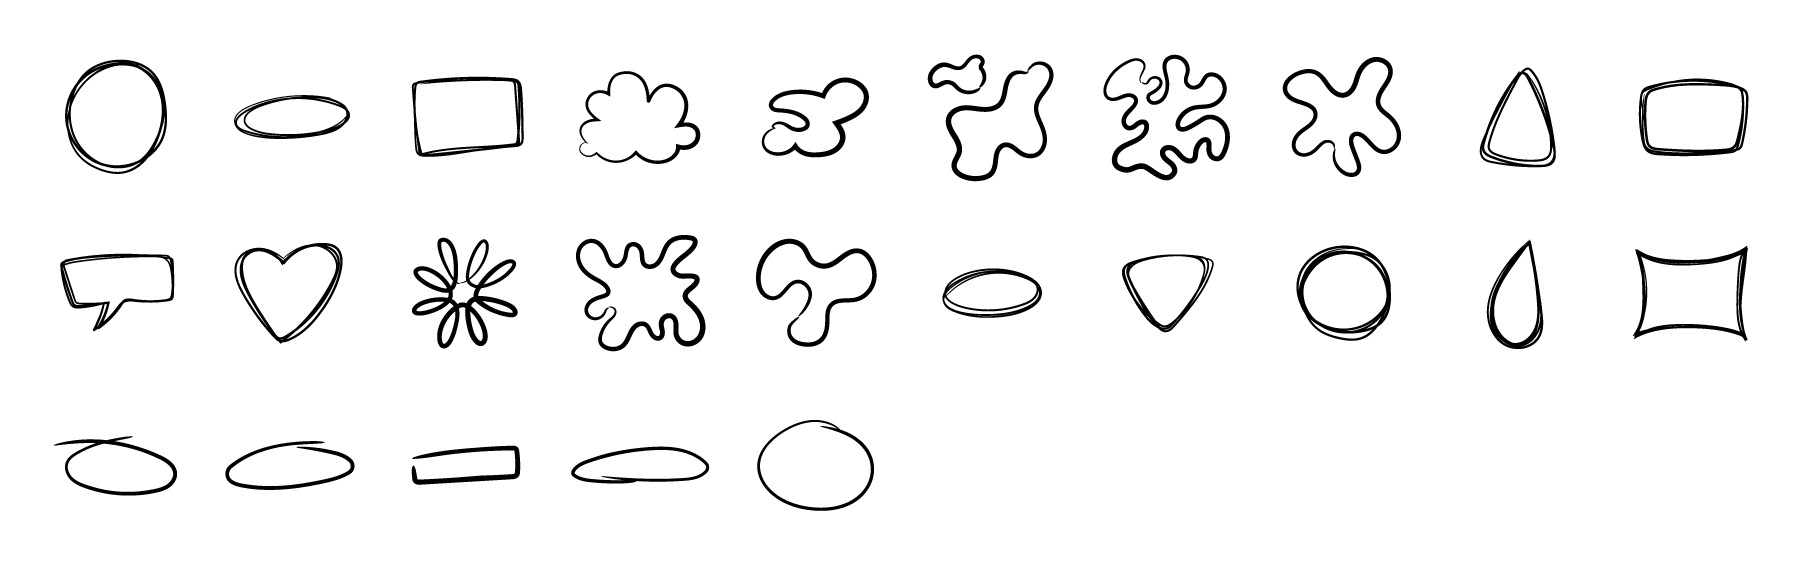 shapes doodle lines